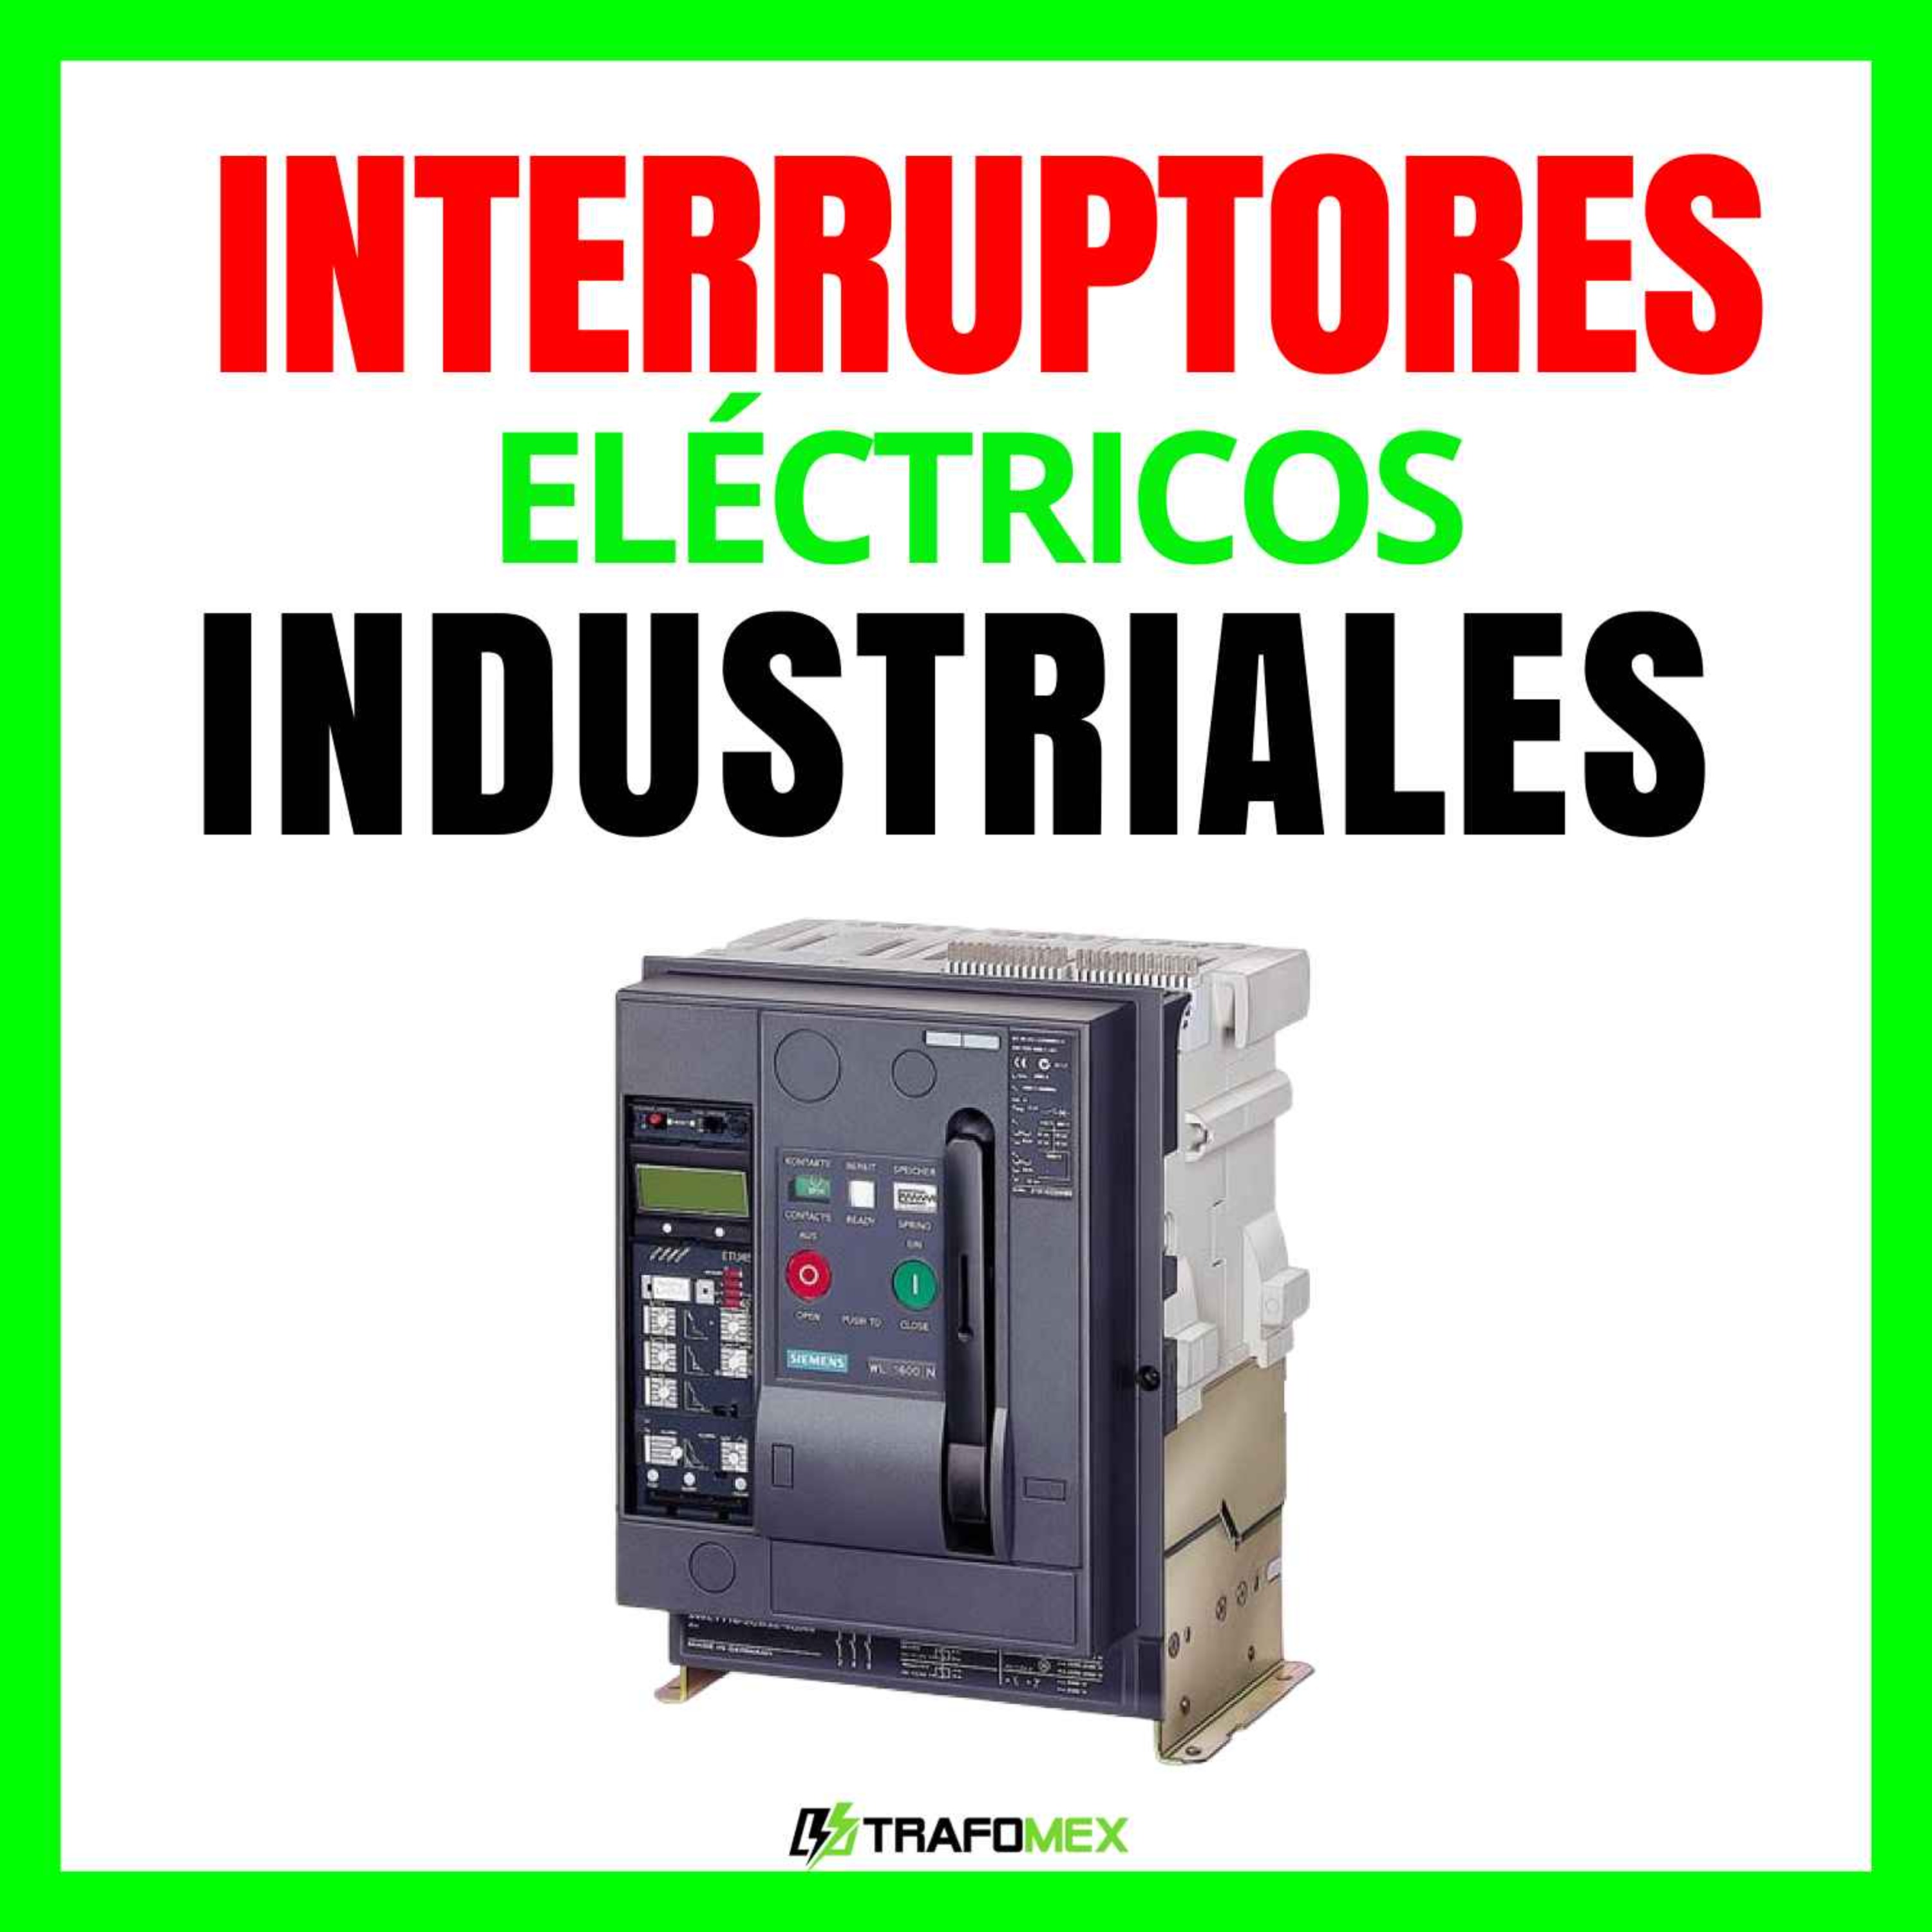 cover art for Interruptores eléctricos industriales - Capacitación Eléctrica Trafomex - El podcast de la electricidad industrial